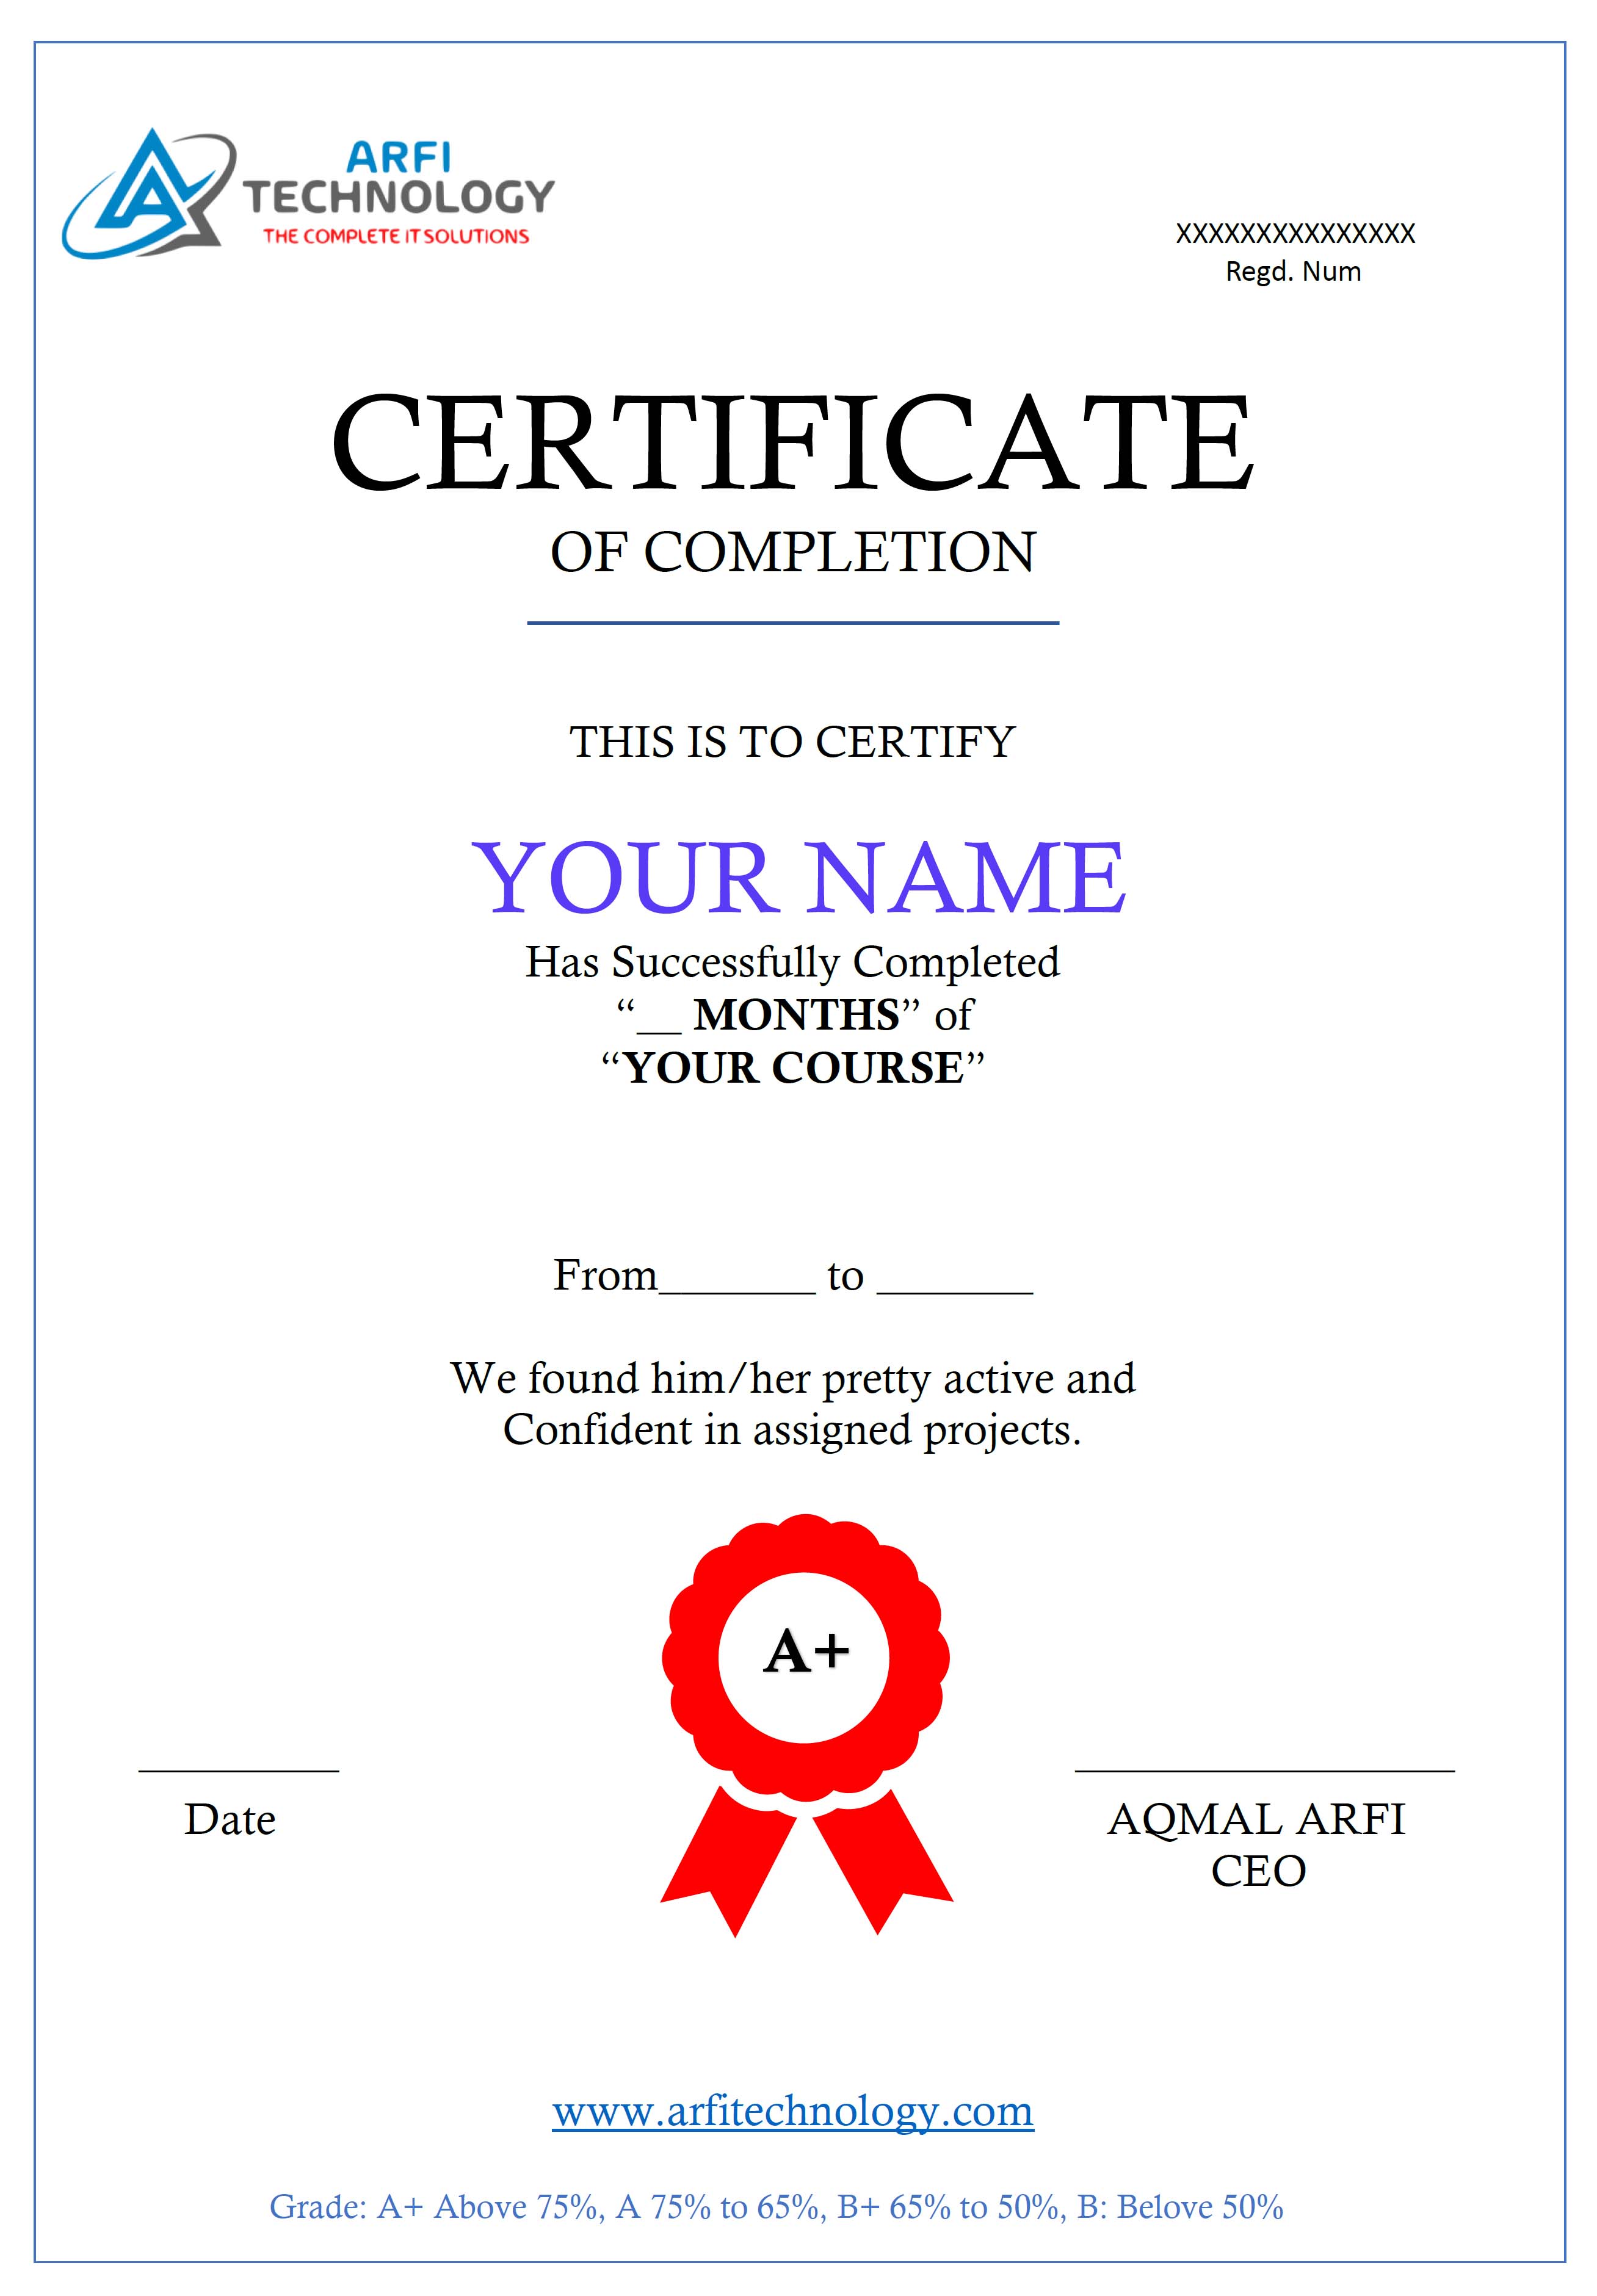 Arfi Technology certificate